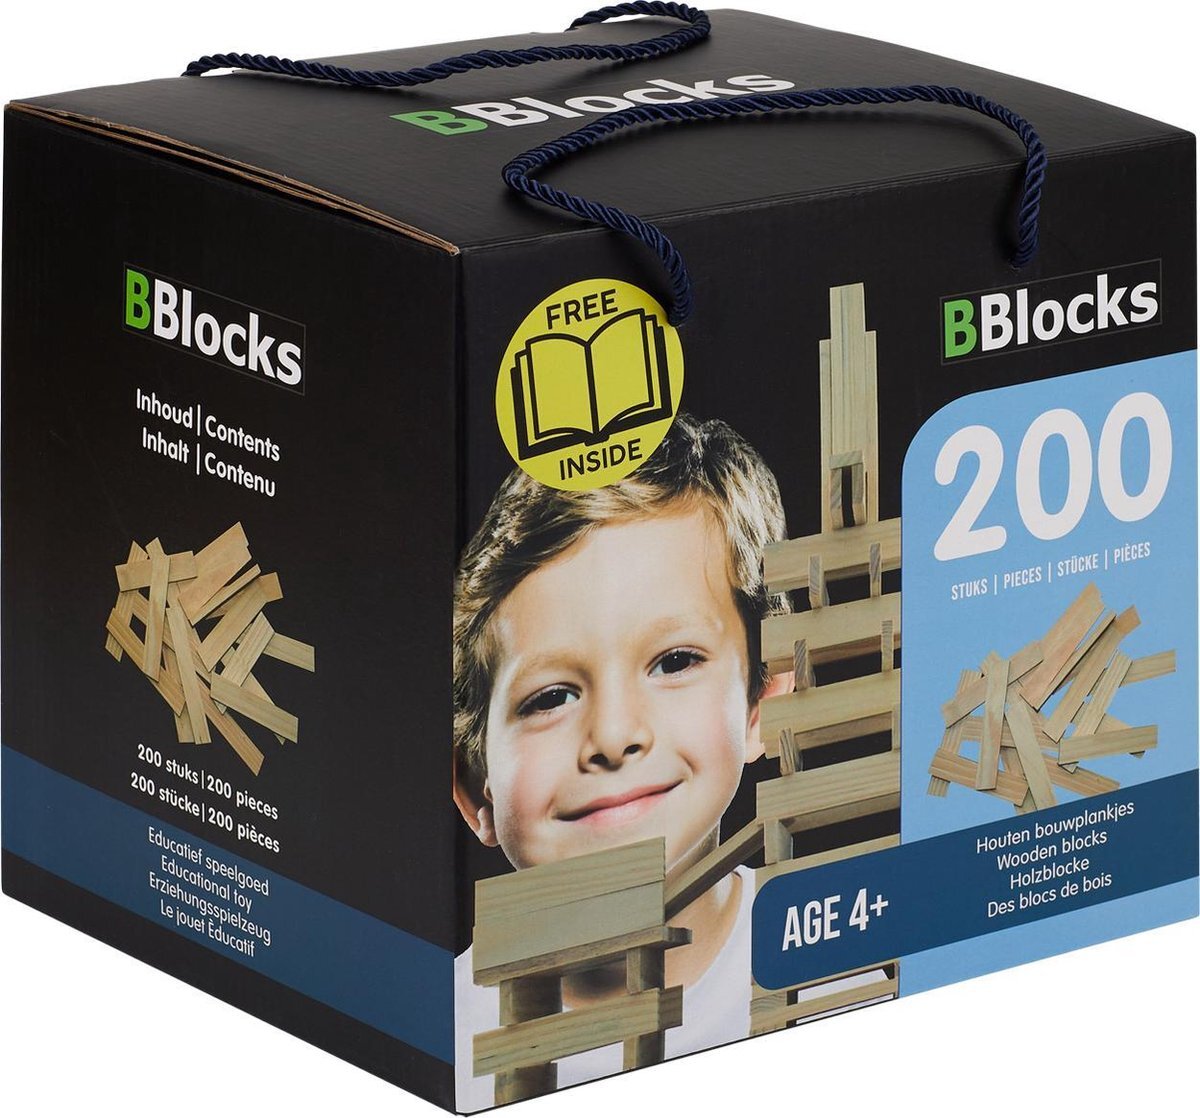 Bblocks bouwplankjes blank, 200dlg. Merk: